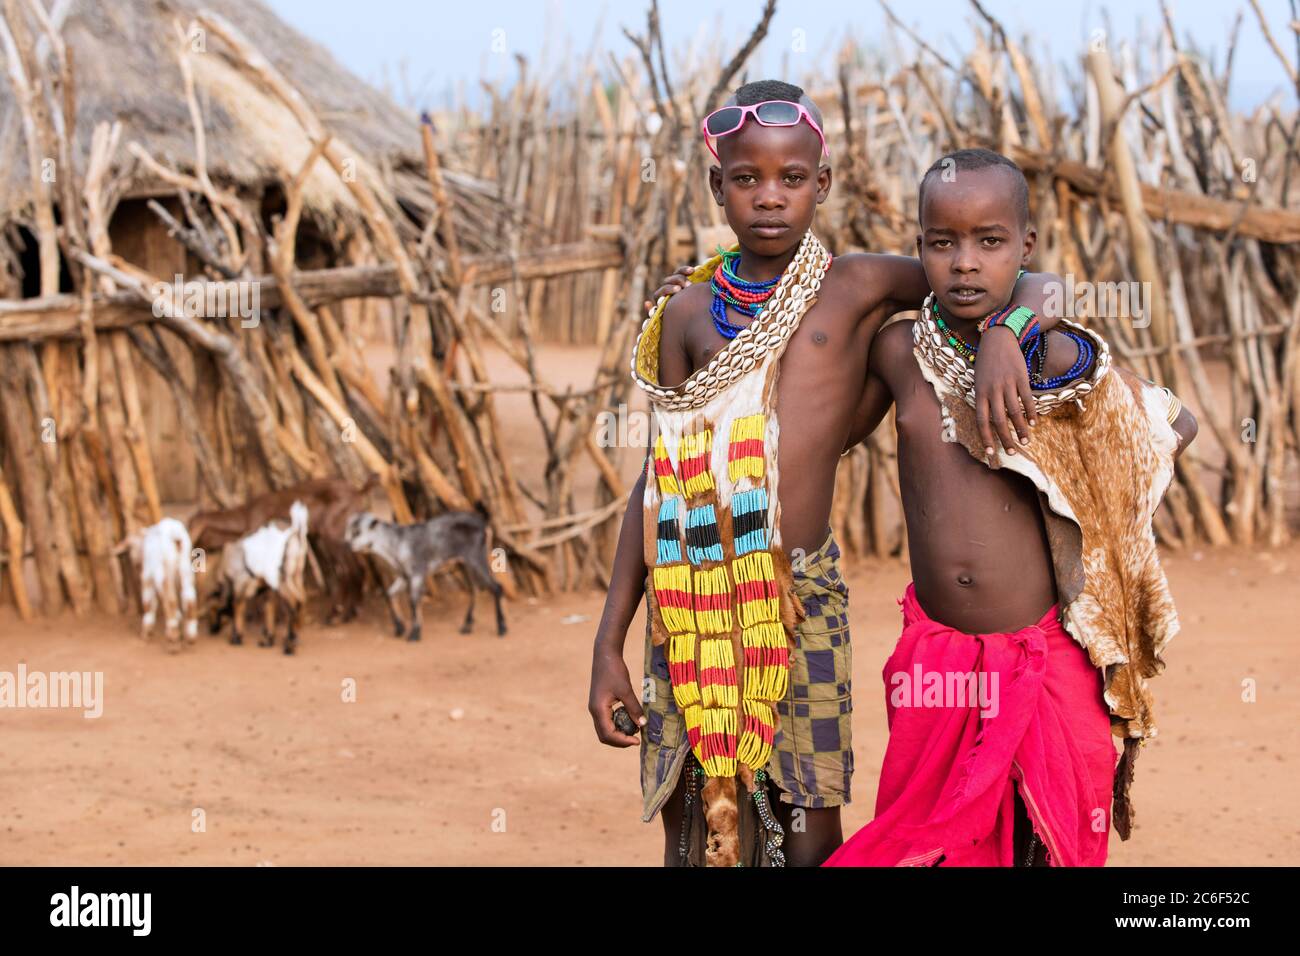 Deux enfants noirs de la tribu Hamar / Hamer en robe traditionnelle dans le village Turmi, vallée de la rivière Omo, zone de Debub Omo, sud de l'Éthiopie, Afrique Banque D'Images